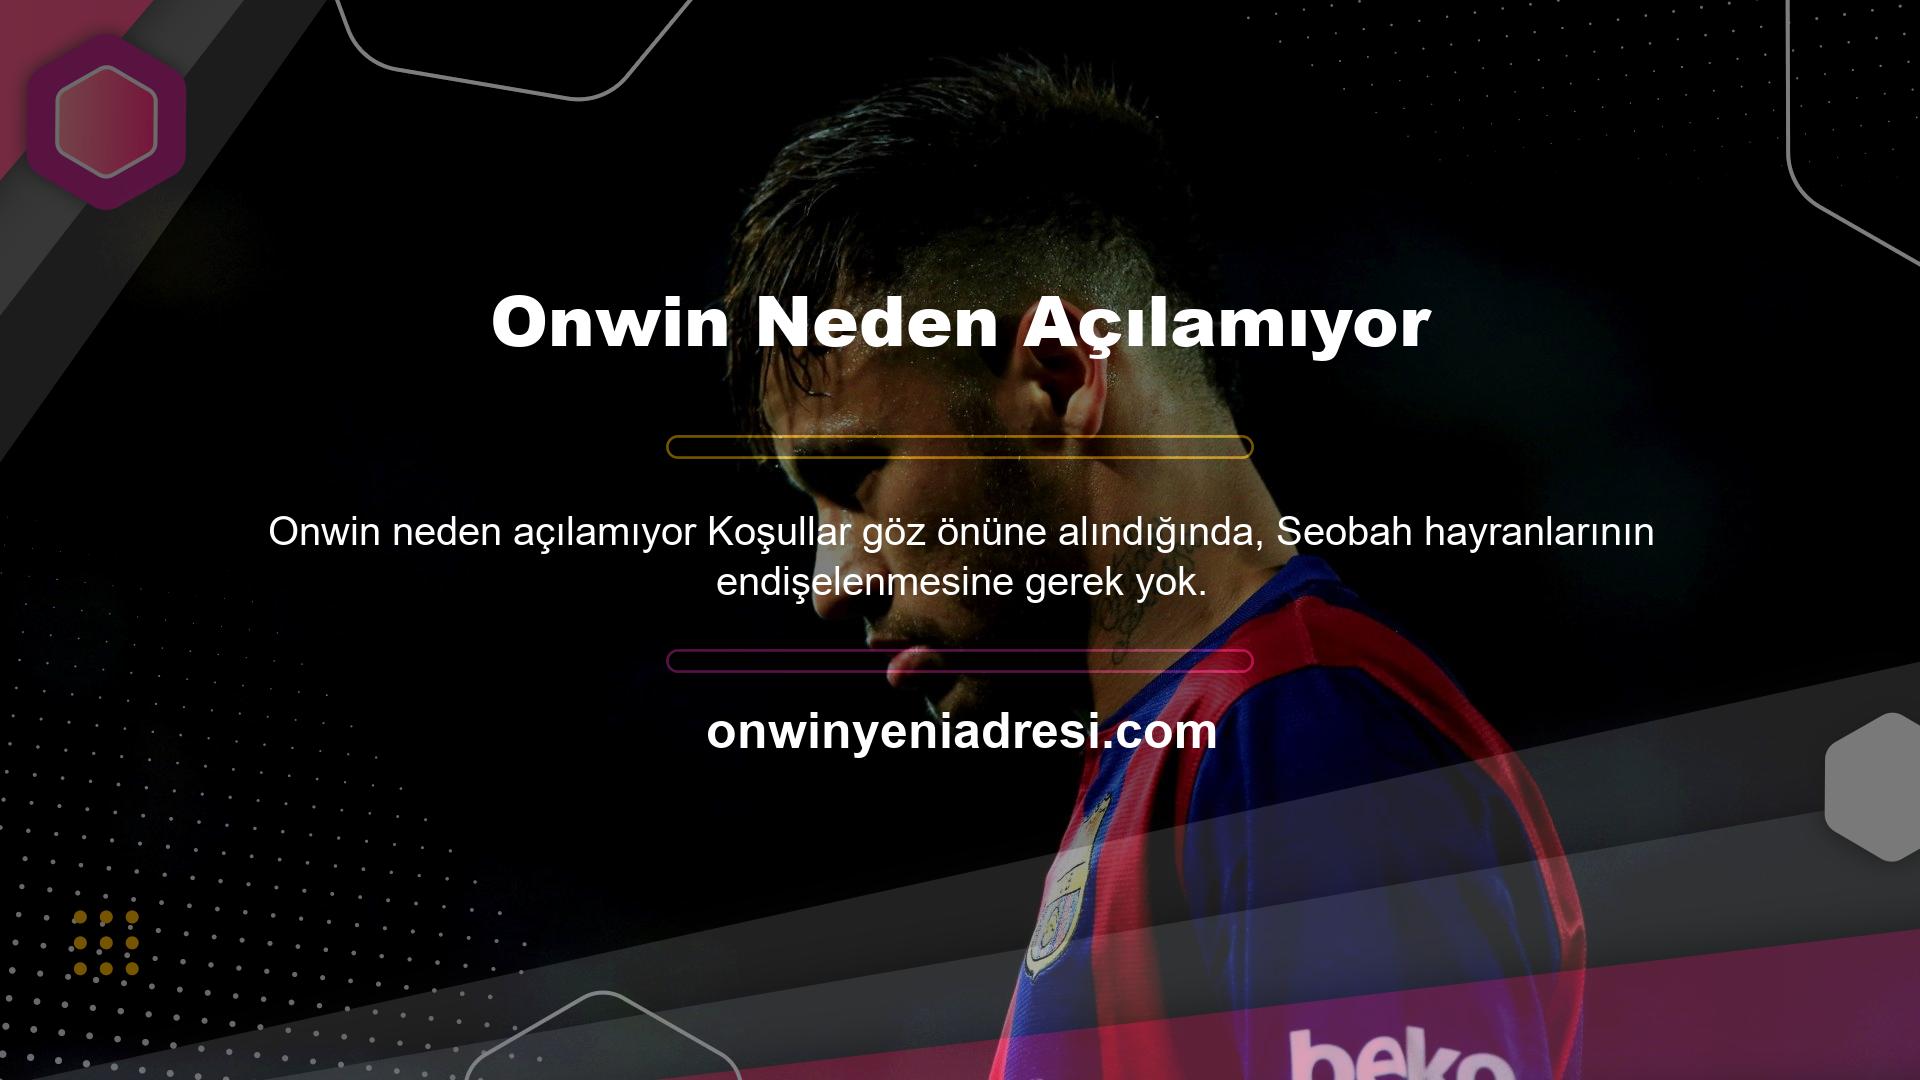 Onwin müşteri hizmetleri, Onwin hayranlarına web sitesindeki güncel giriş adresini kısa sürede sağlayacaktır